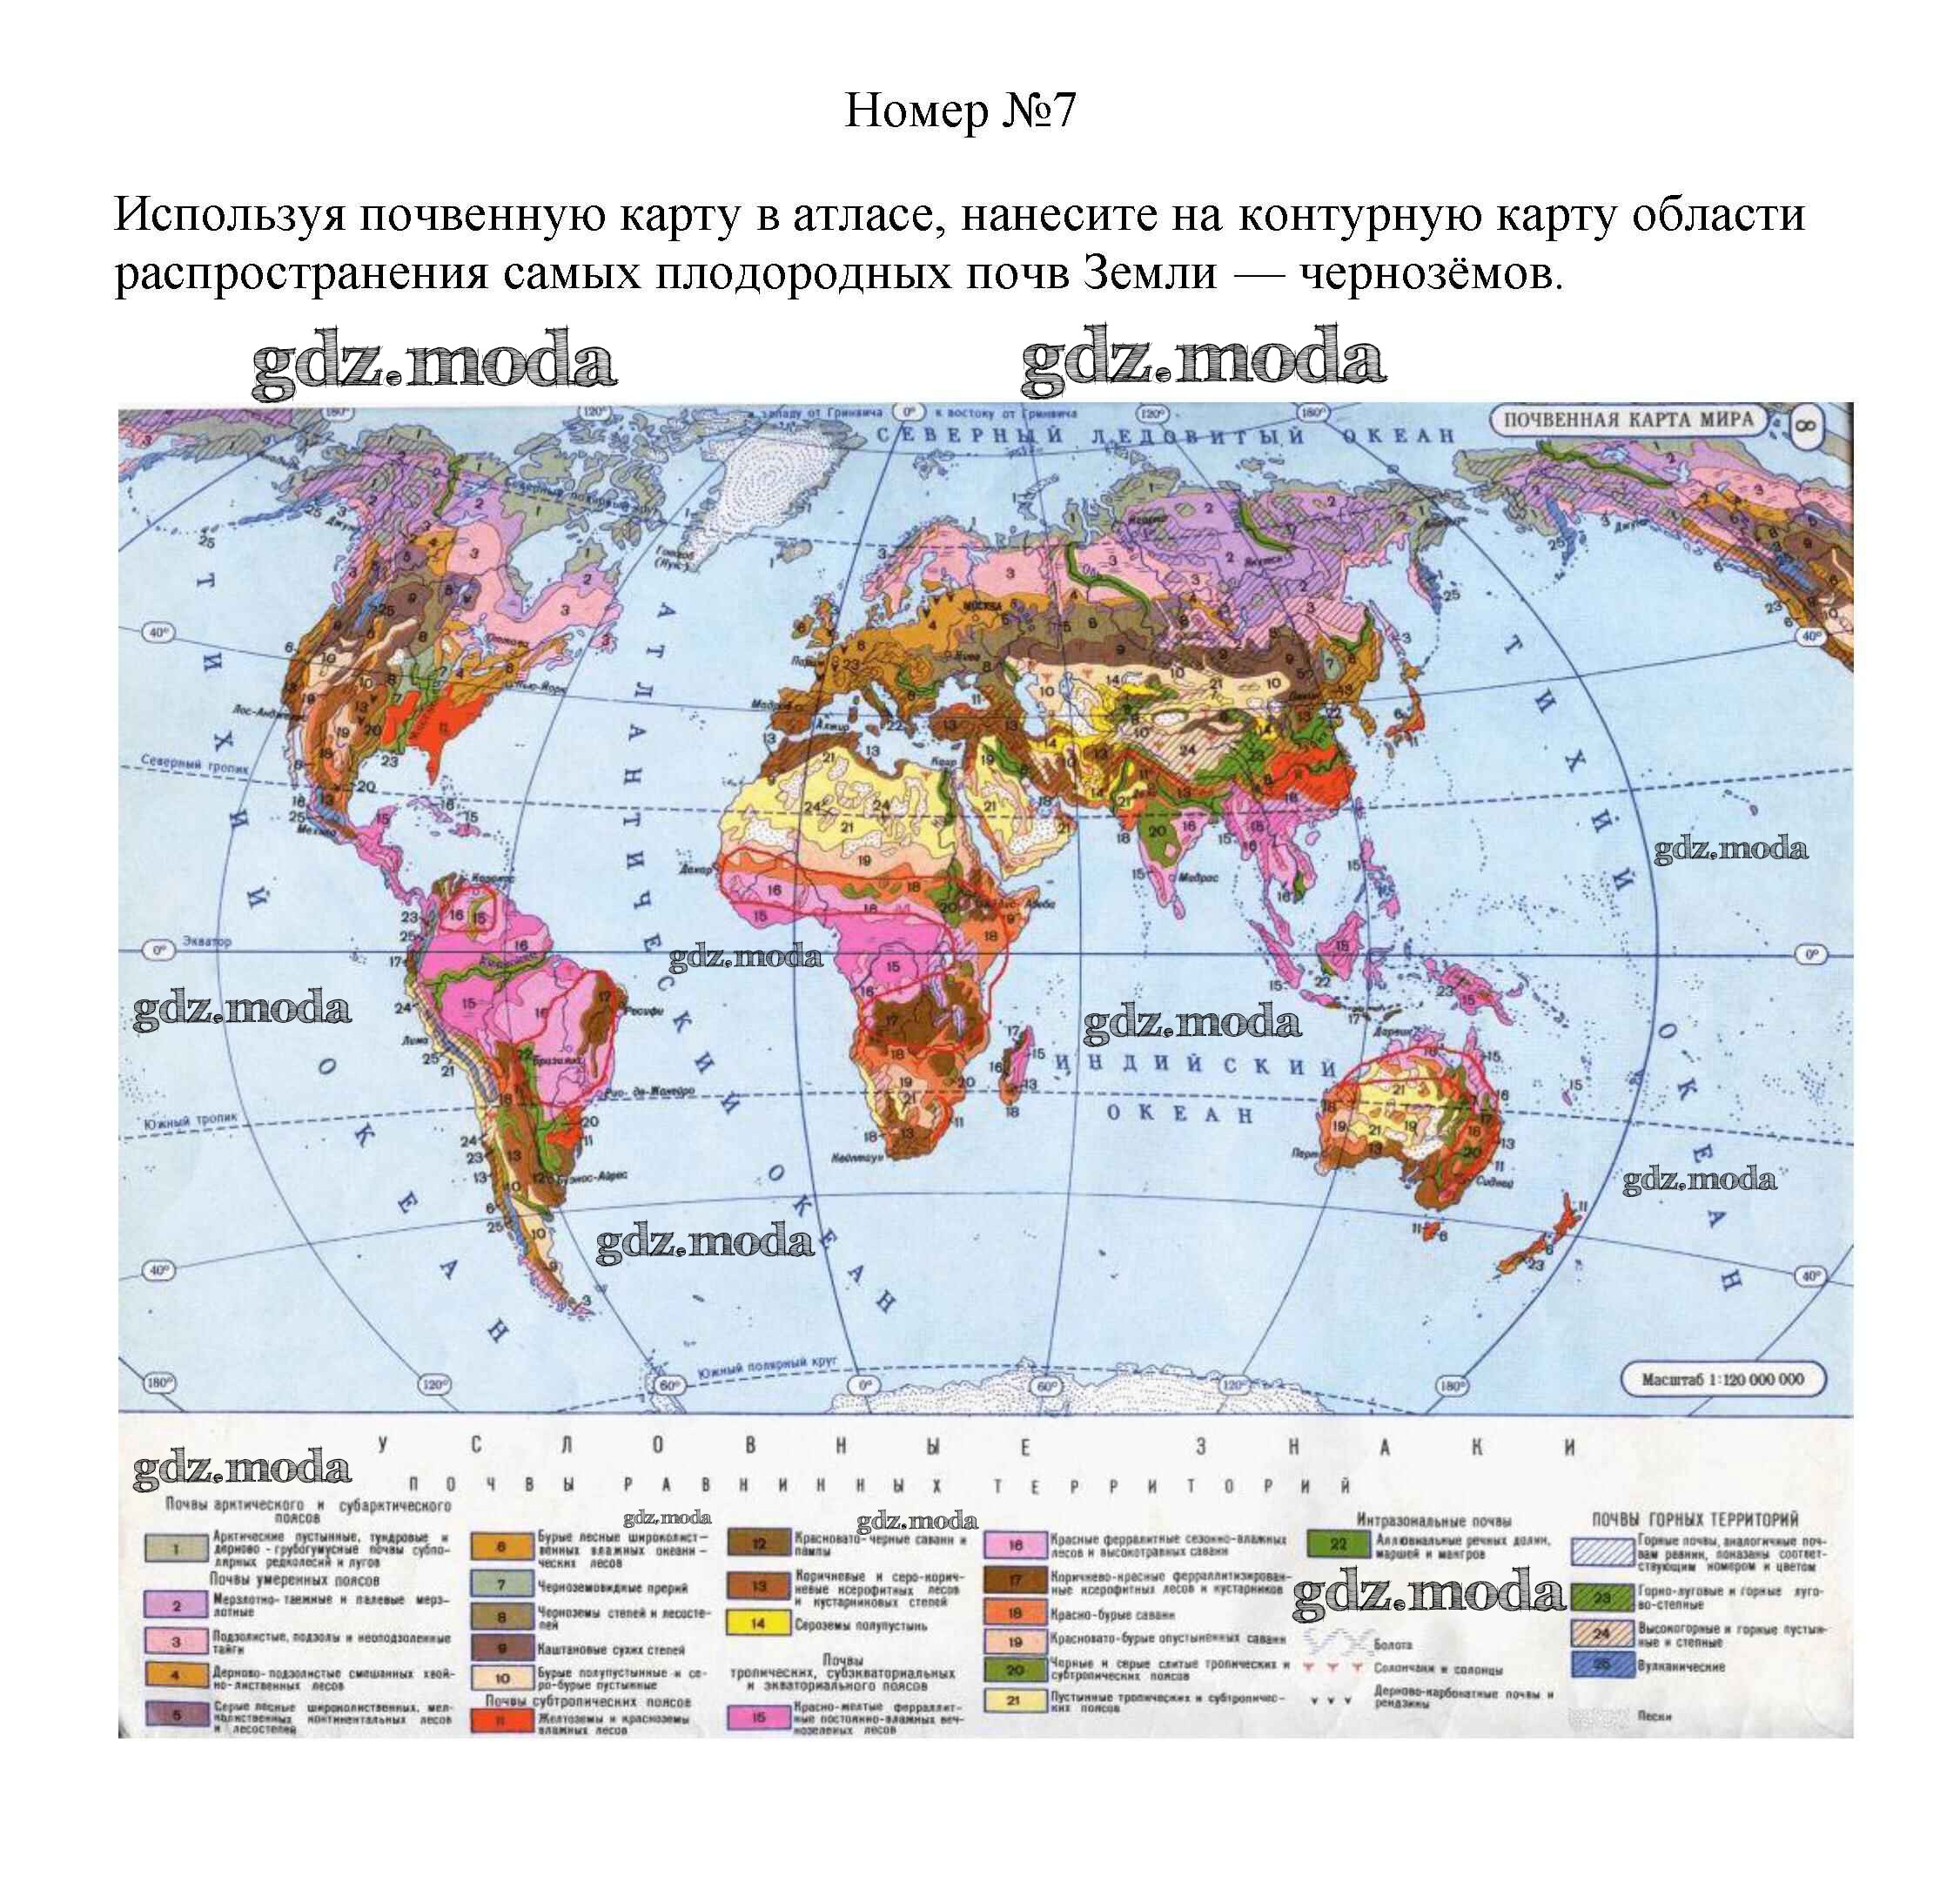 Самые плодородные земли в стране. Карта типов почв в мире. Атлас по географии 7 класс почвенная карта.